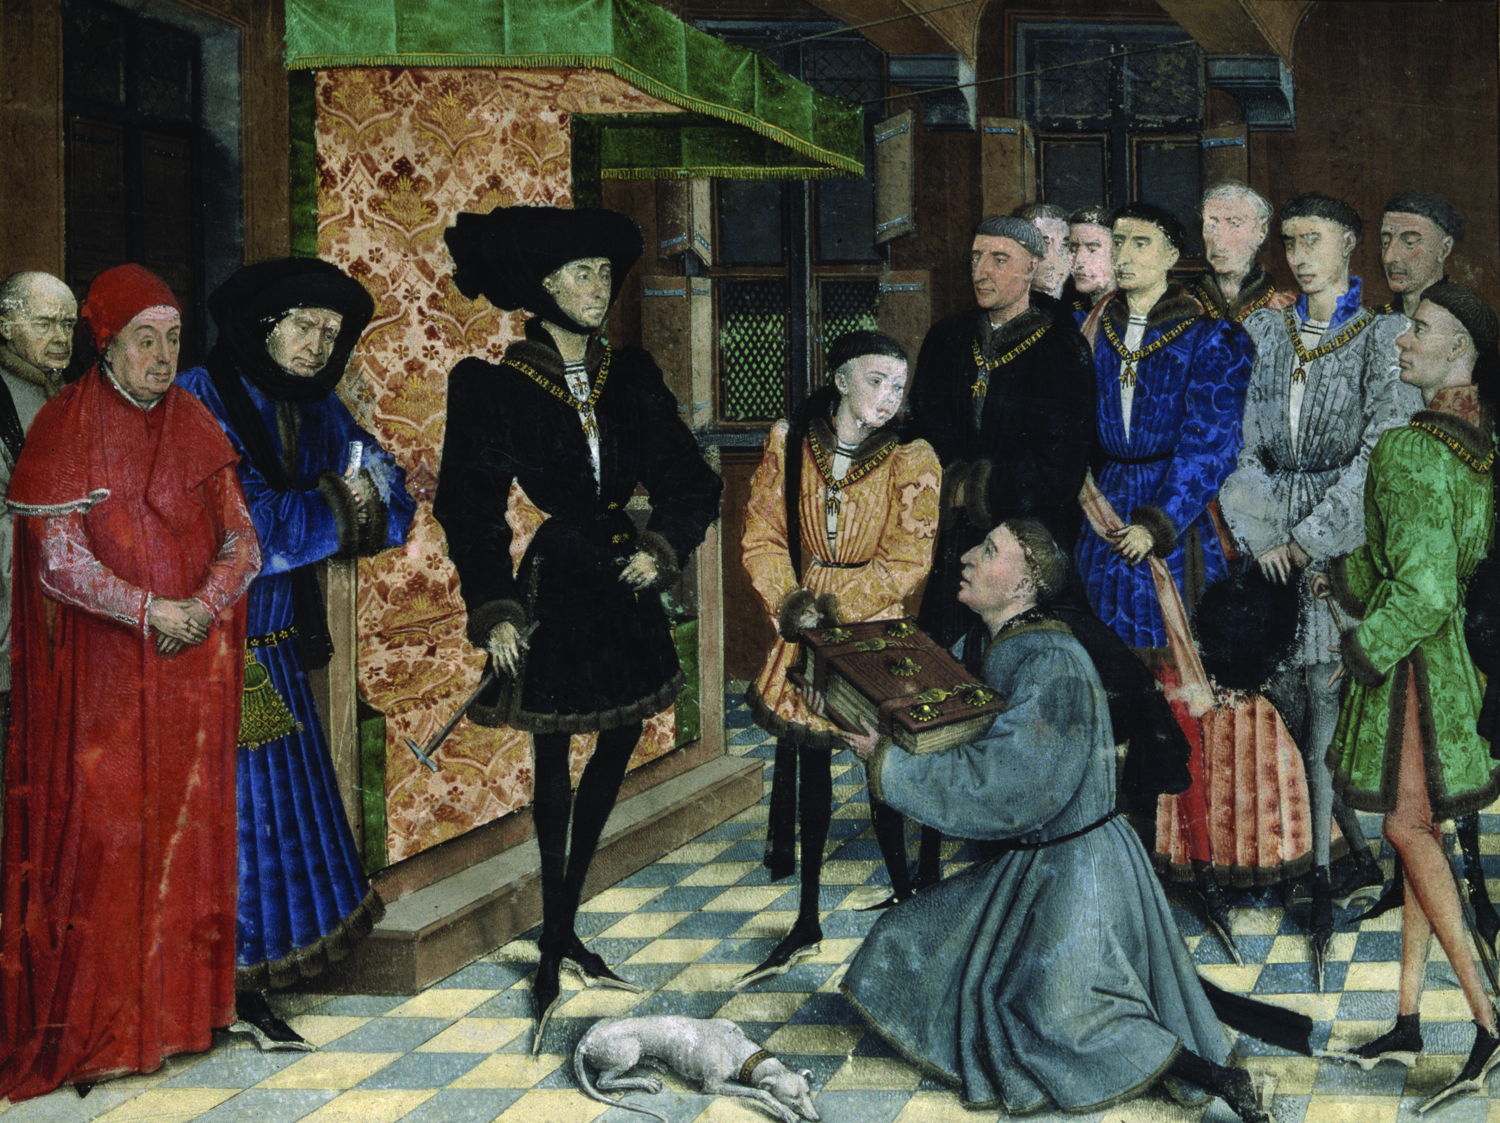 Presentatie van het handschrift van de Chroniques de Hainaut aan hertog Filips de Goede
miniatuur toegeschreven aan Rogier Van der Weyden
KBR- ms. 9242 – folio 1 recto

